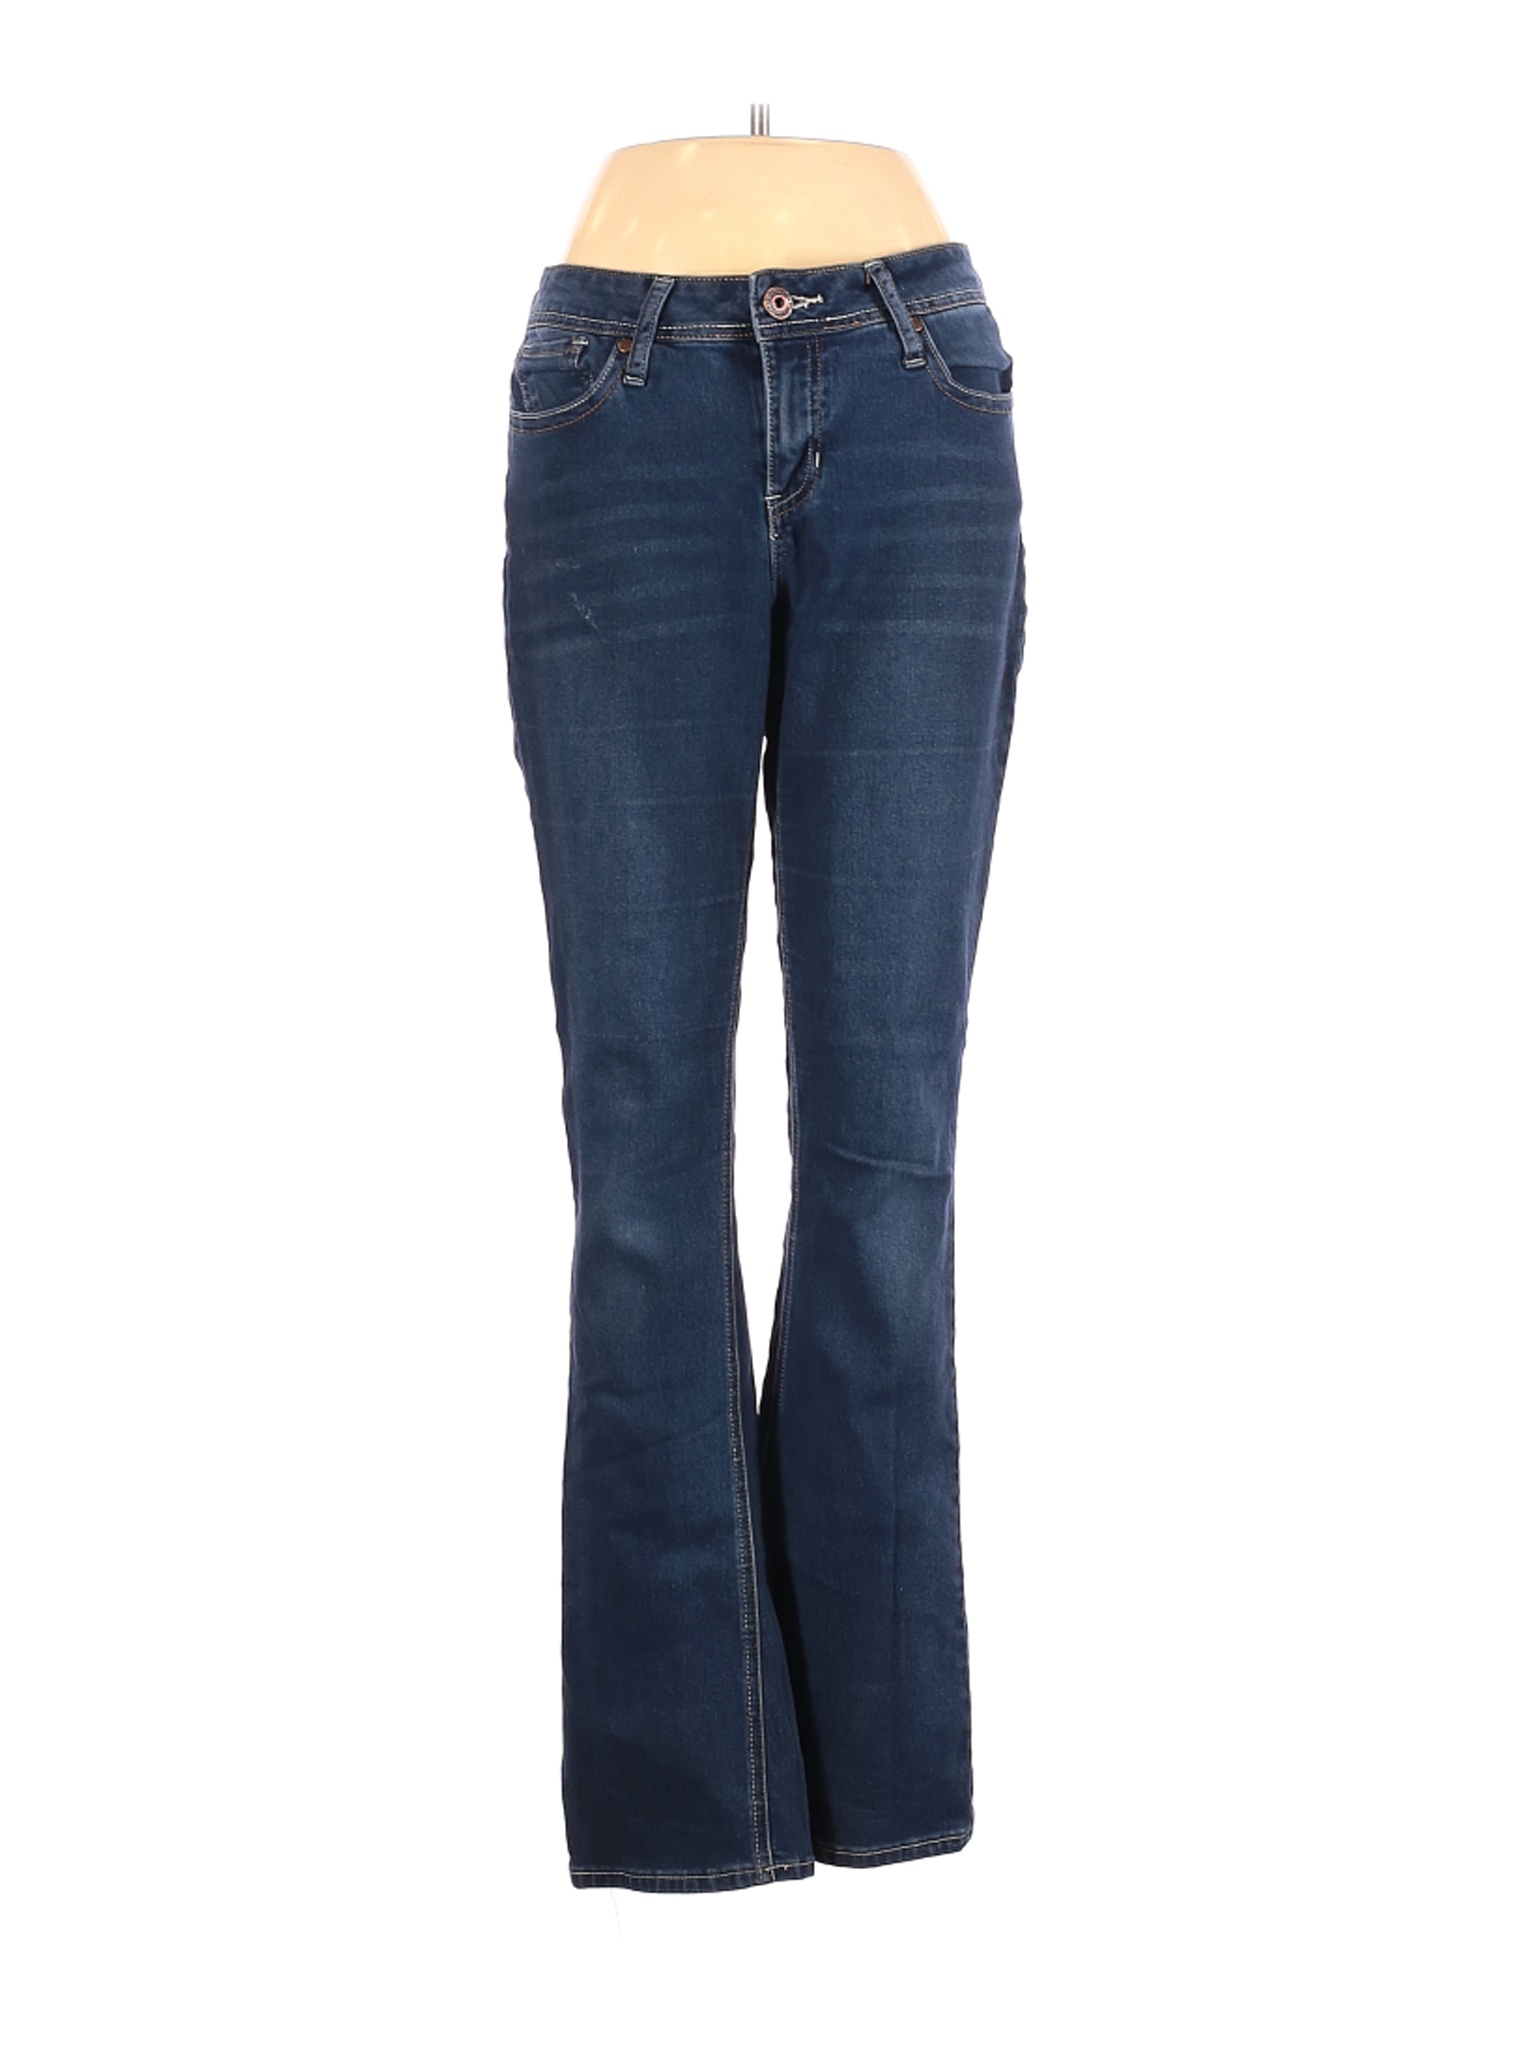 Hydraulic Women Blue Jeans 10 | eBay